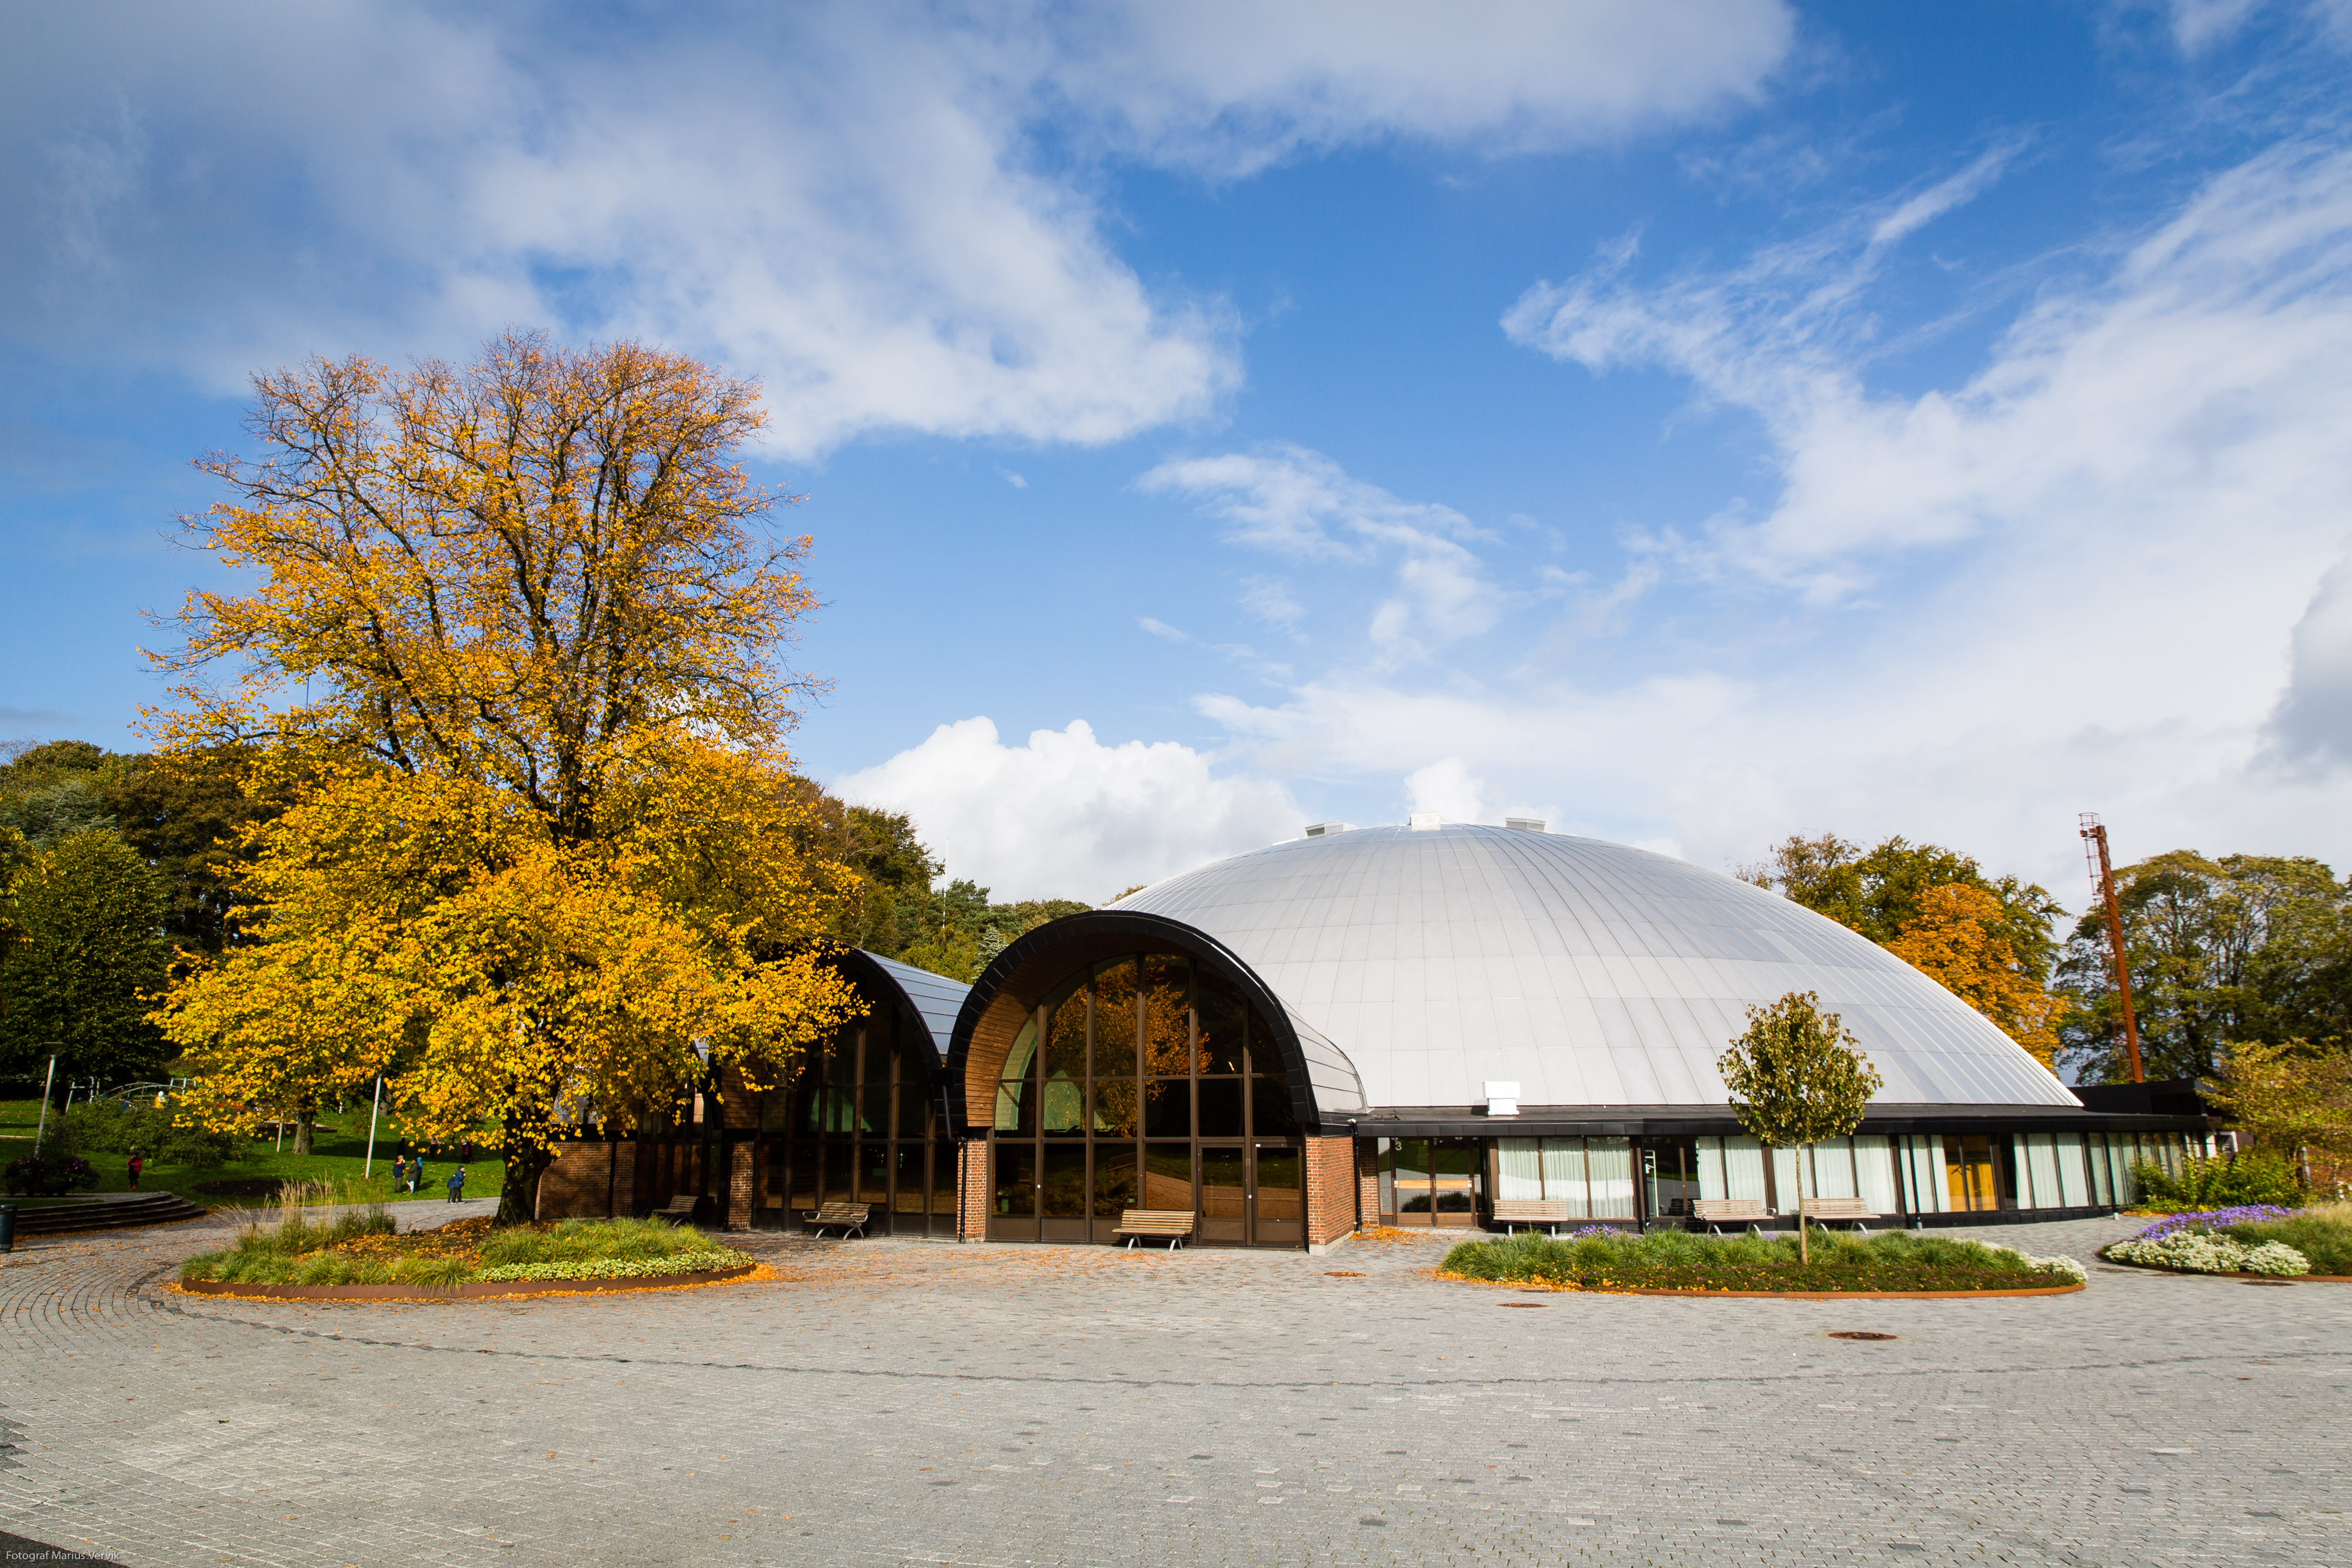 Kuppelhallen i Bjergstedparken. Foto: Marius Vervik